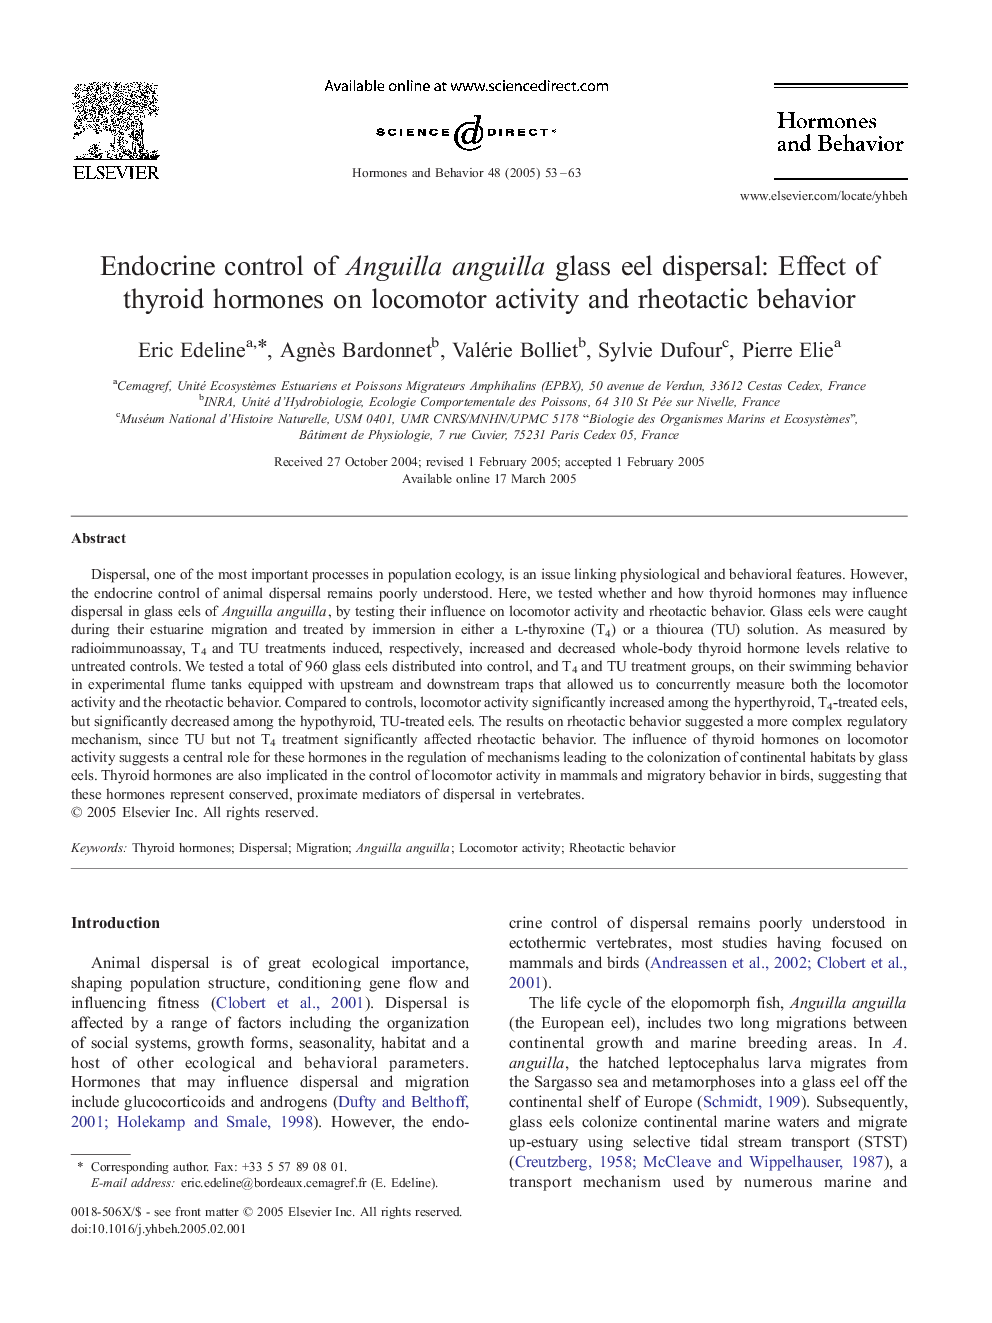 Endocrine control of Anguilla anguilla glass eel dispersal: Effect of thyroid hormones on locomotor activity and rheotactic behavior